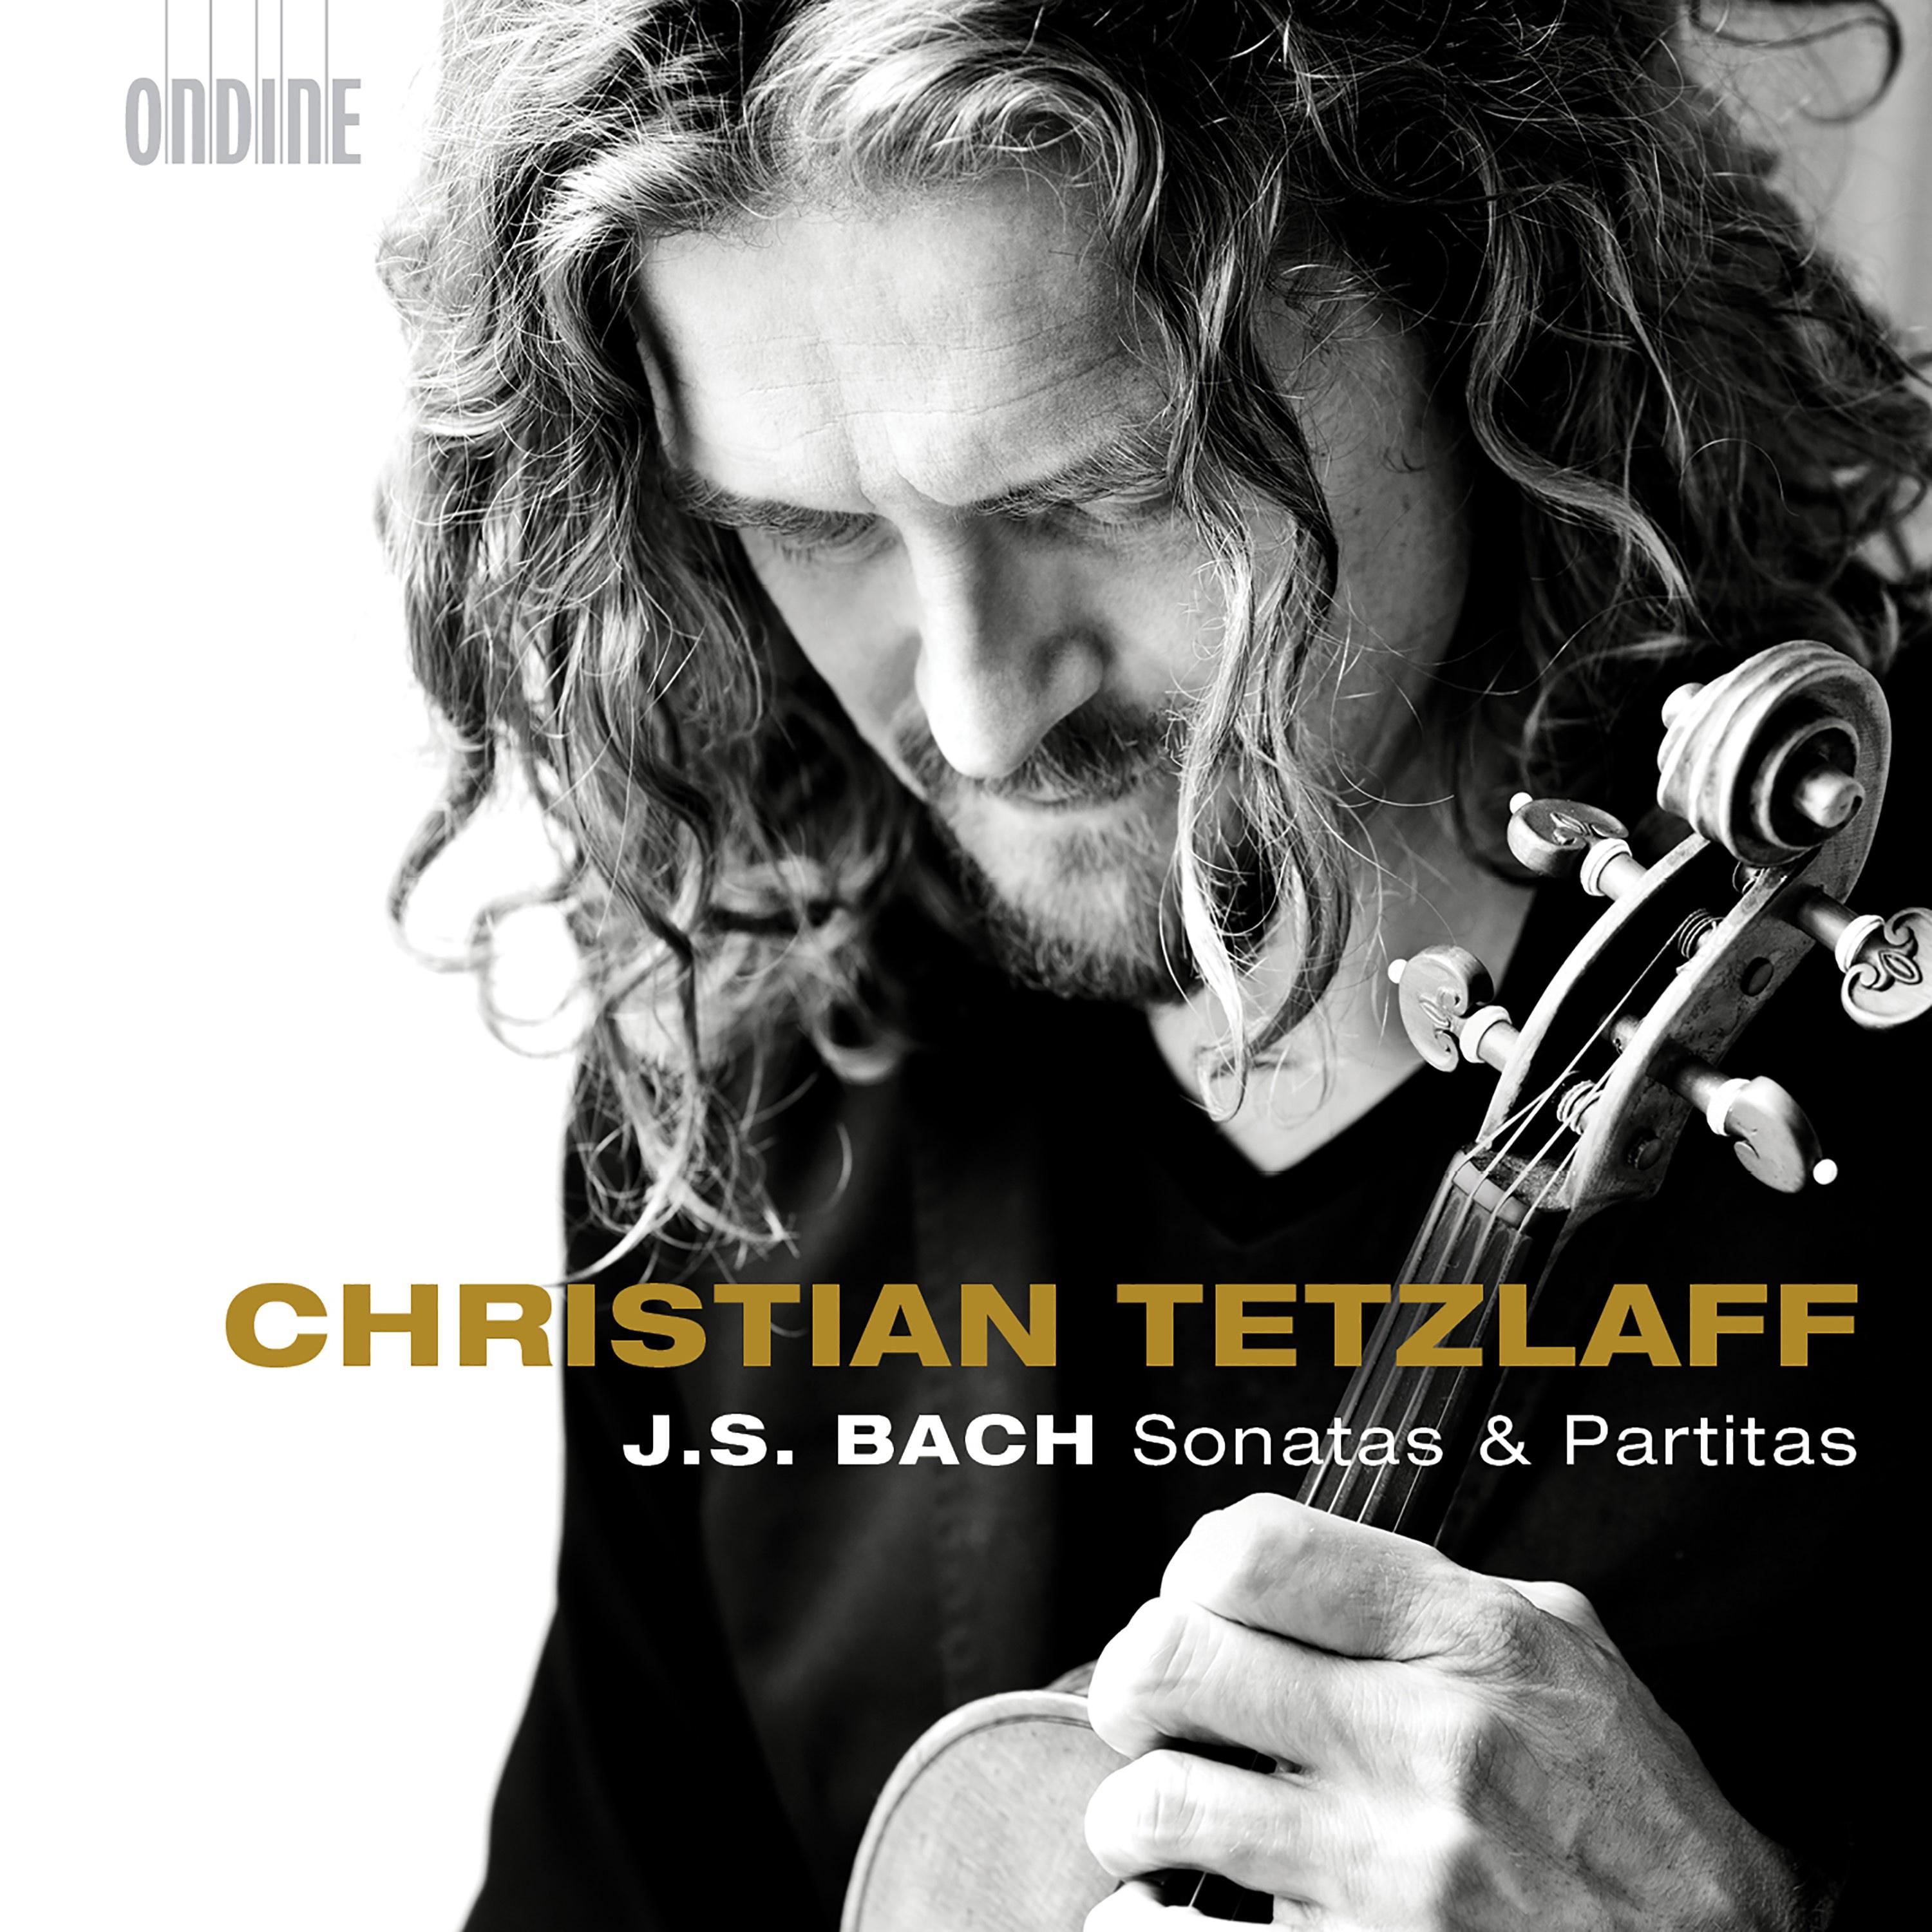 Christian Tetzlaff - Violin Partita No. 3 in E Major, BWV 1006: VI. Bourree